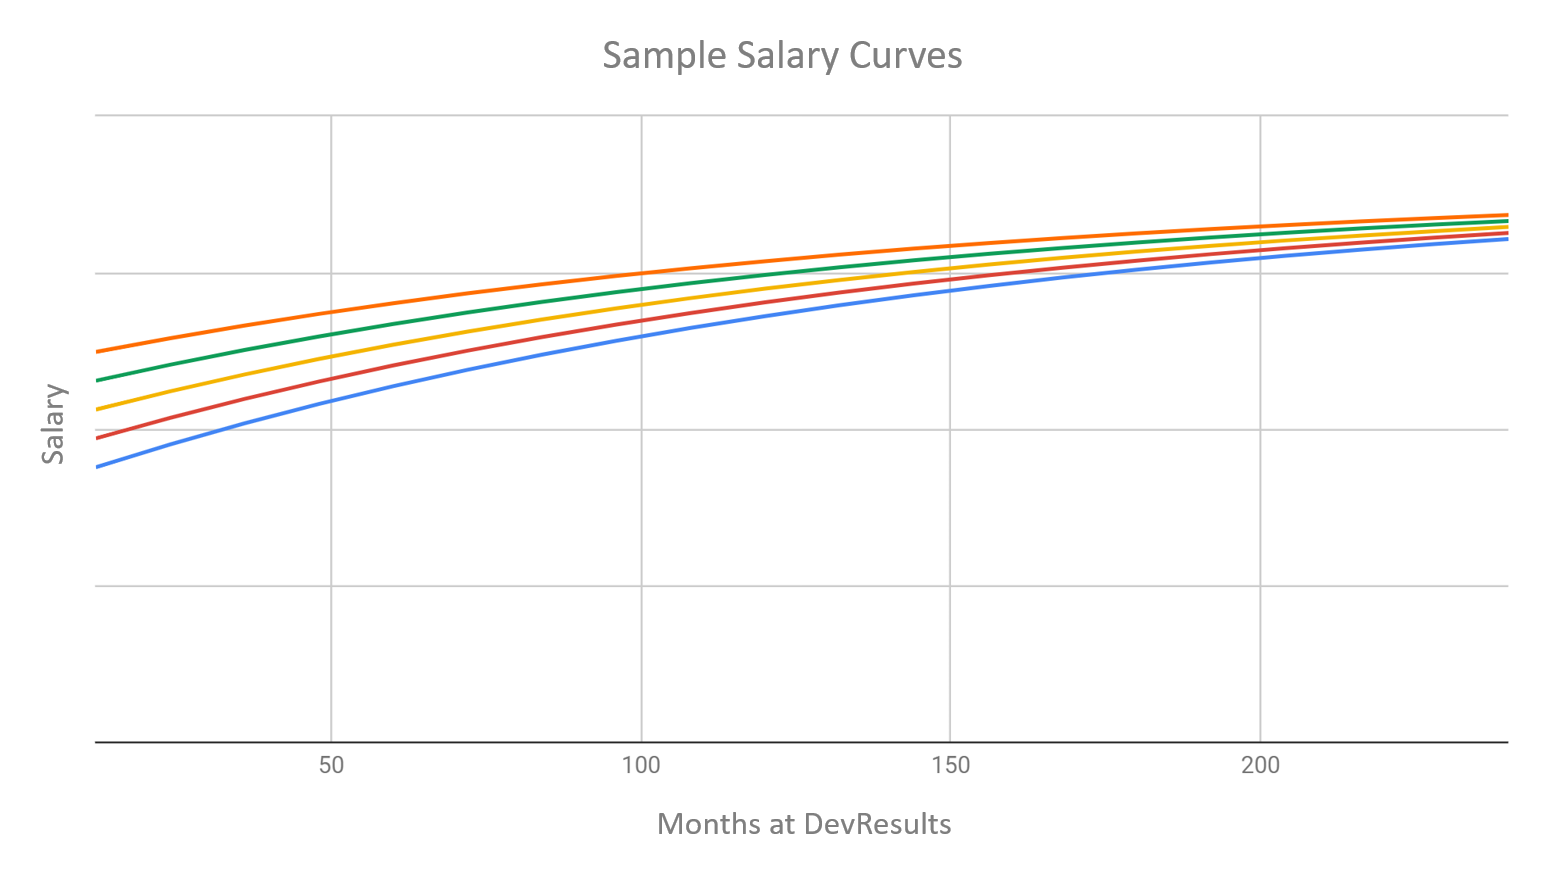 Graph of sample salaries